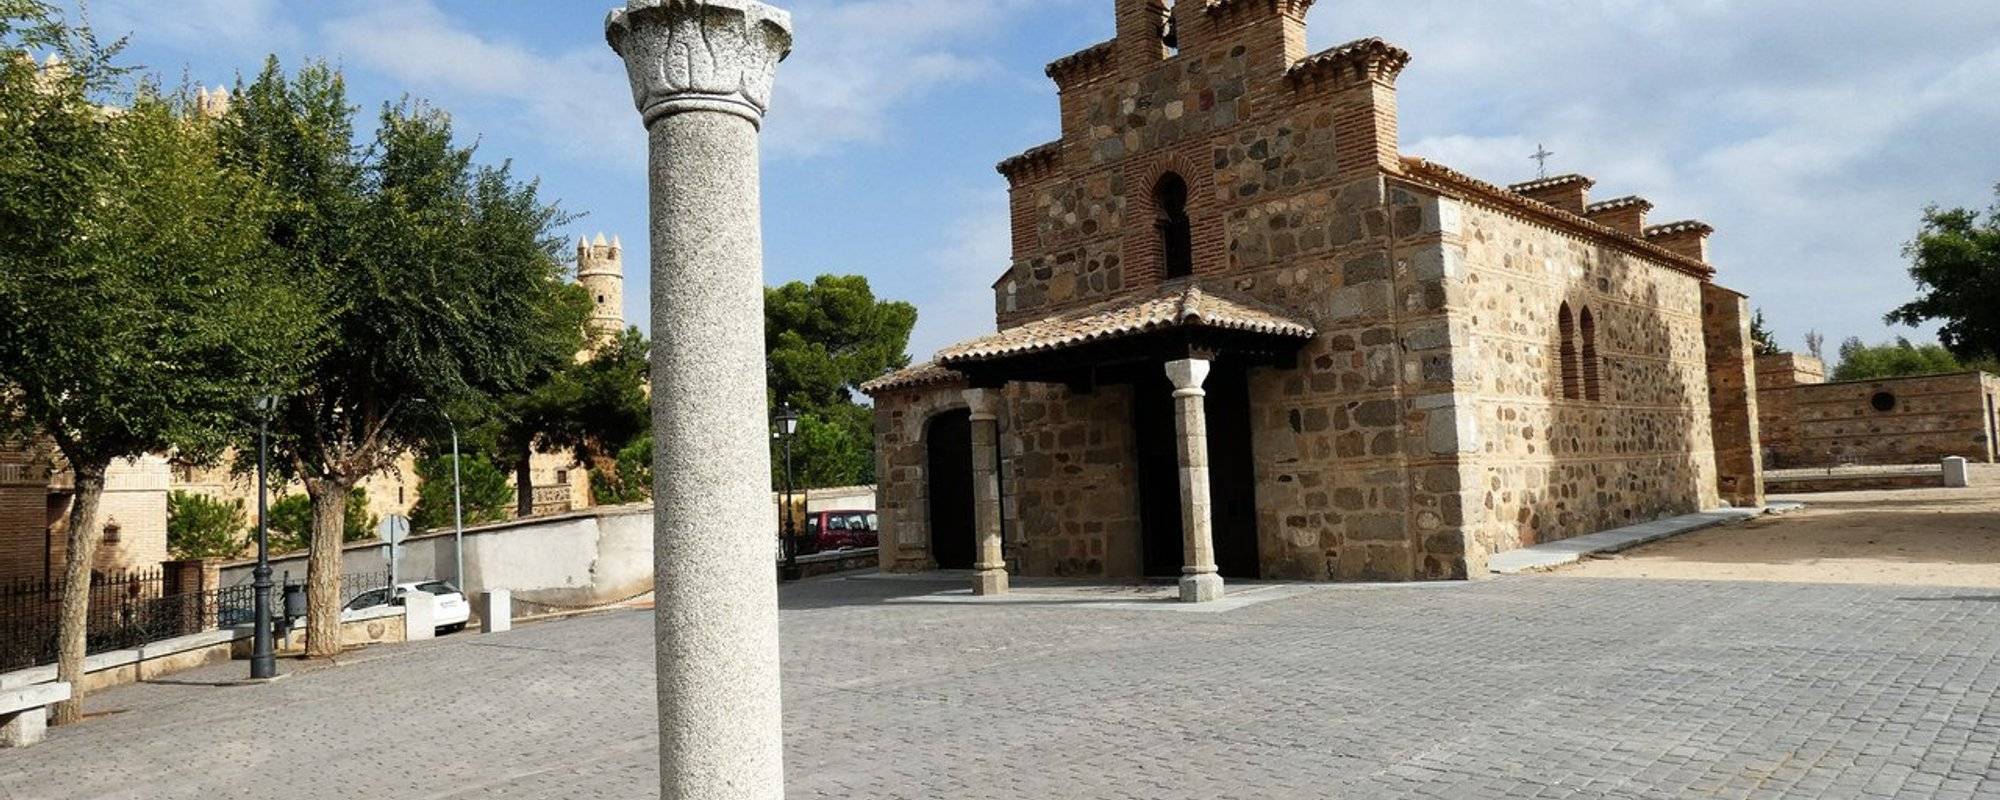 Through the Montes de Toledo: the Mudejar church of Guadamur